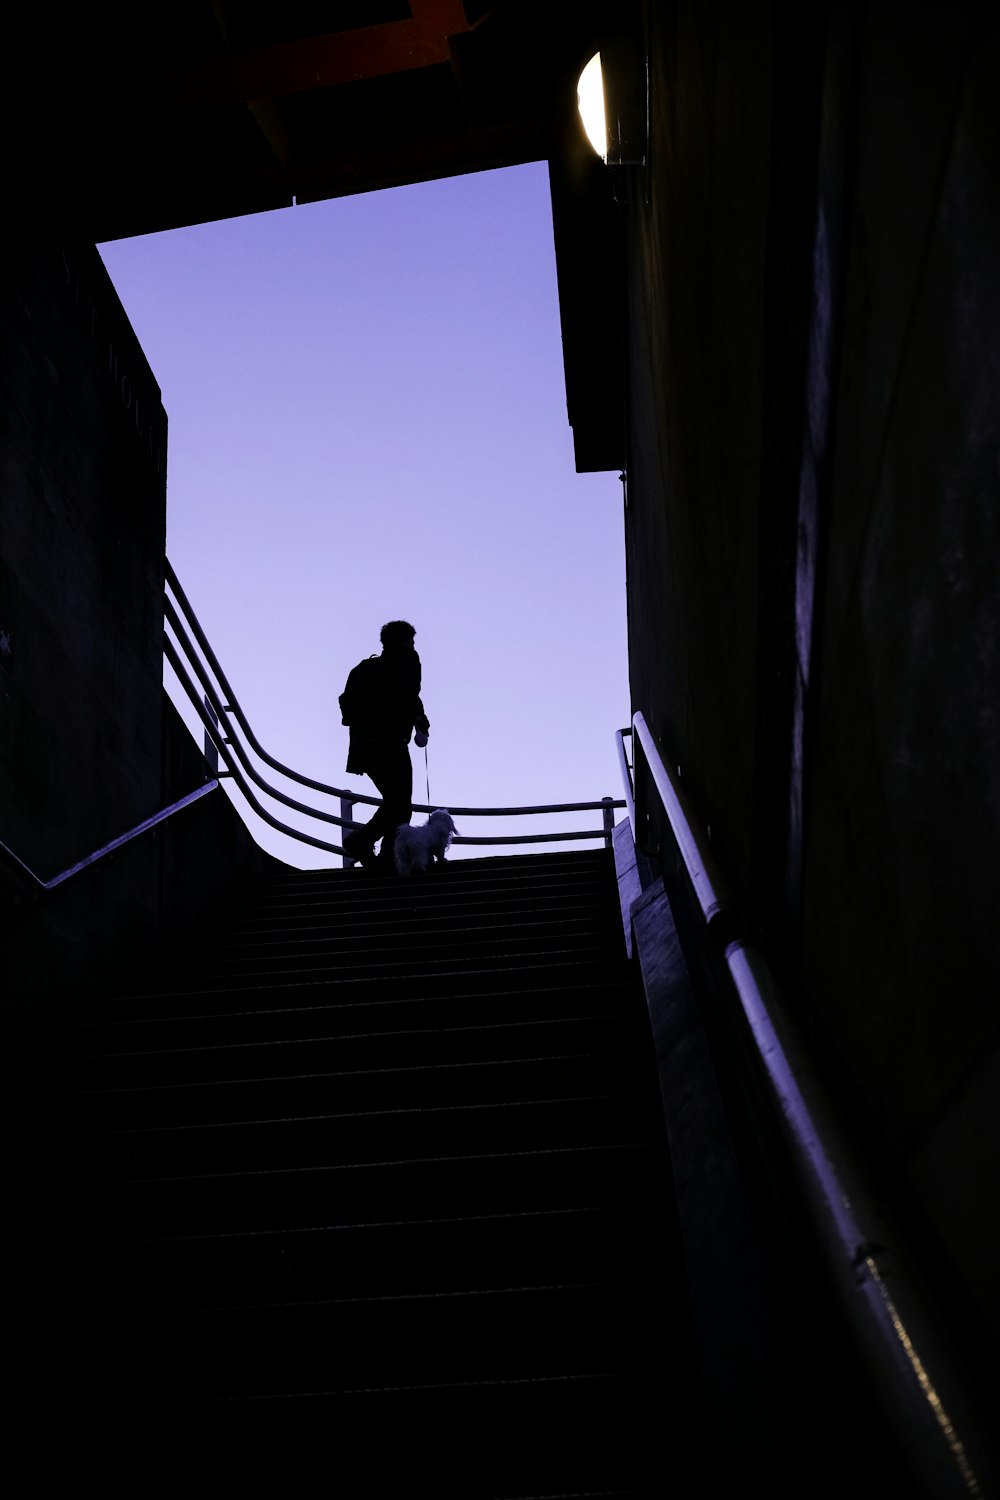 Un hombre subiendo un tramo de escaleras